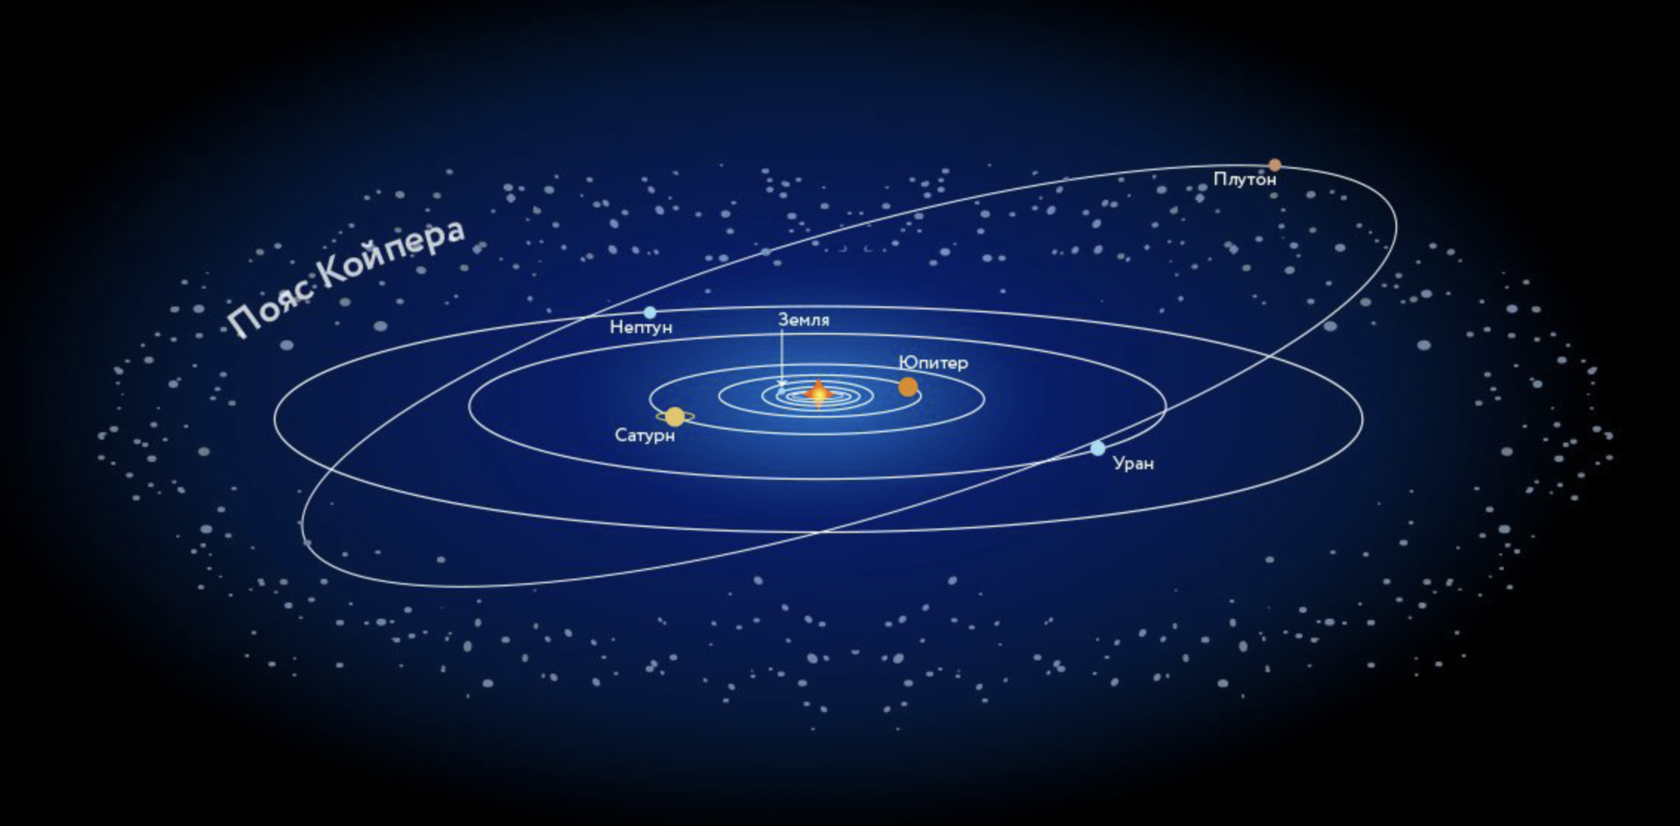 Пояса планет солнечной системы. Пояс Койпера в солнечной системе. Плутон в поясе Койпера. Планеты солнечной системы с поясом Койпера. Нептун и пояс Койпера.